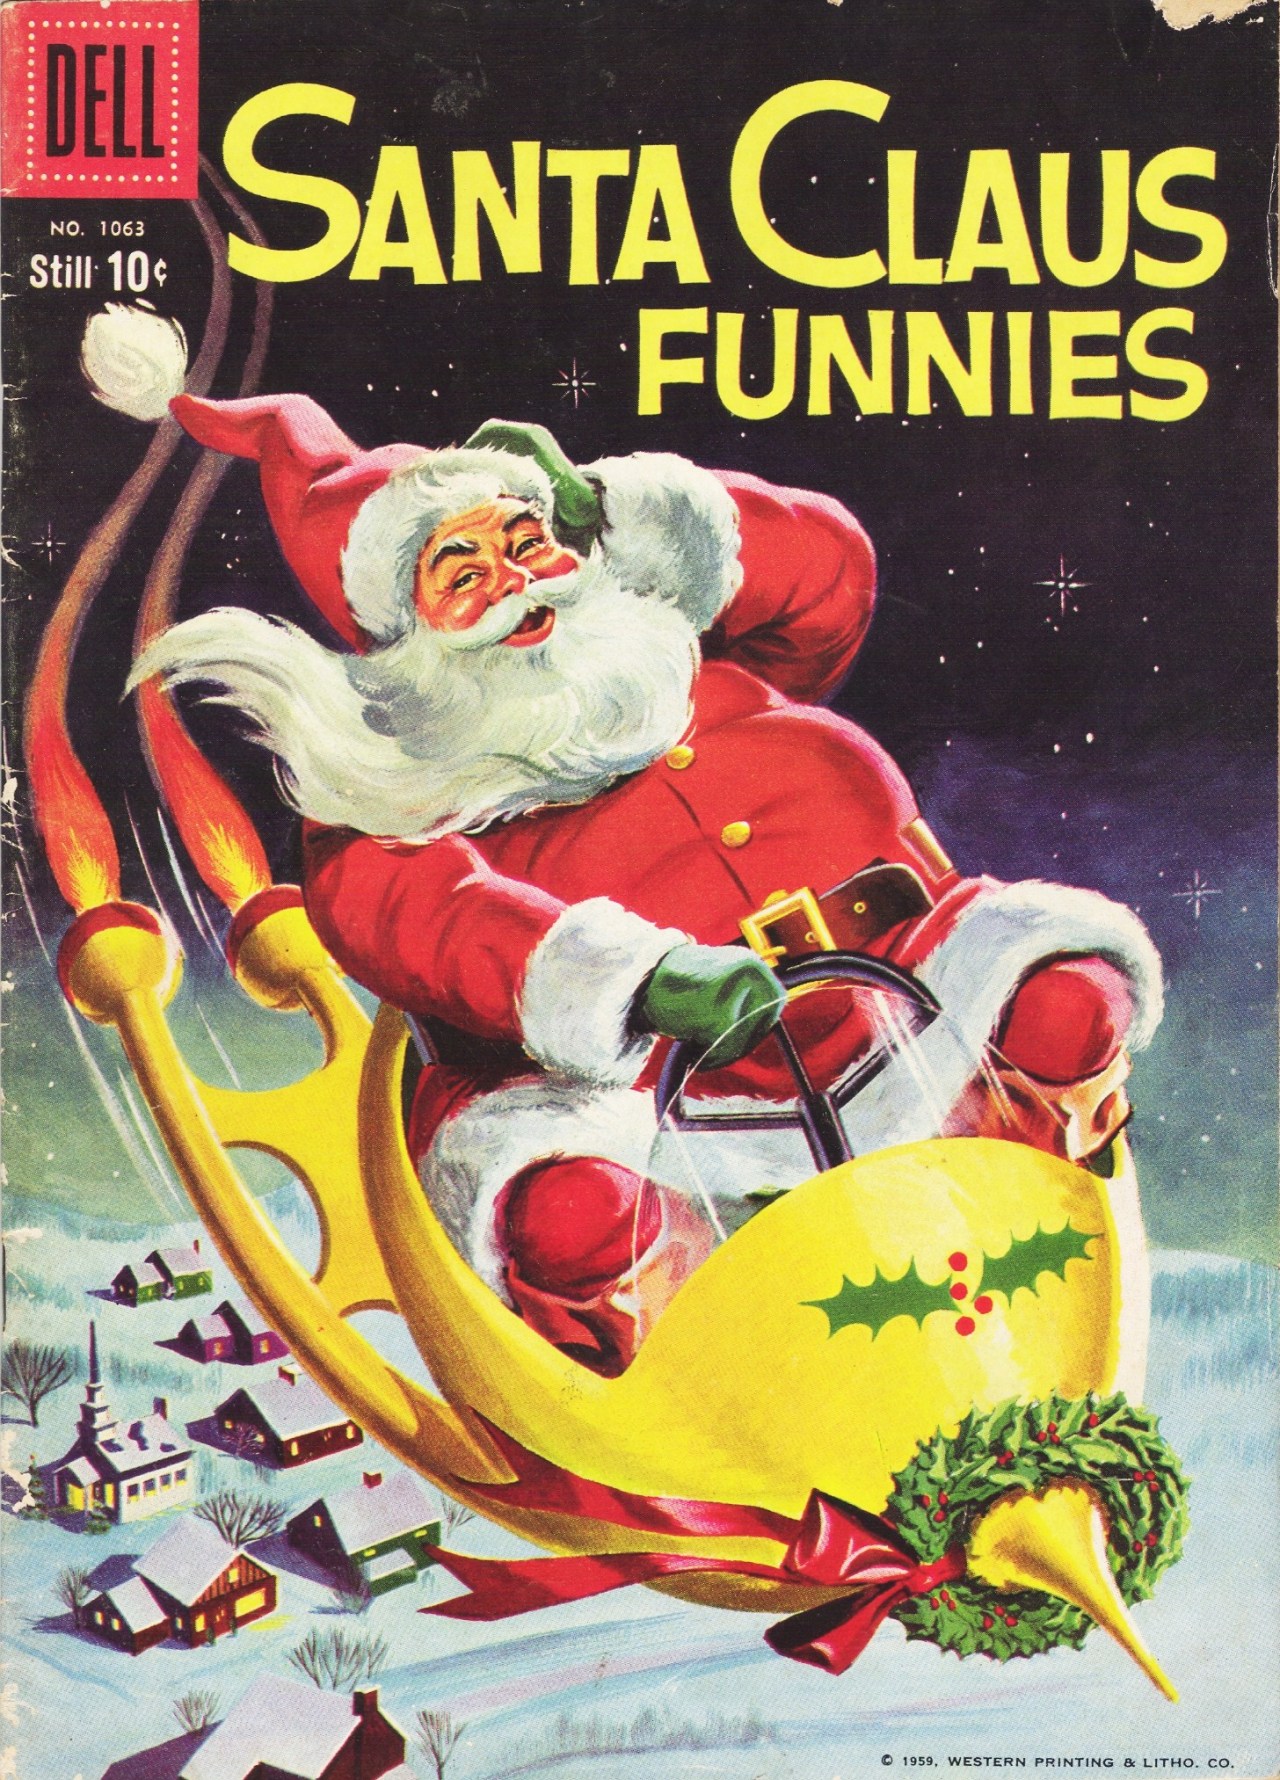 Santa Claus Funnies - 1959